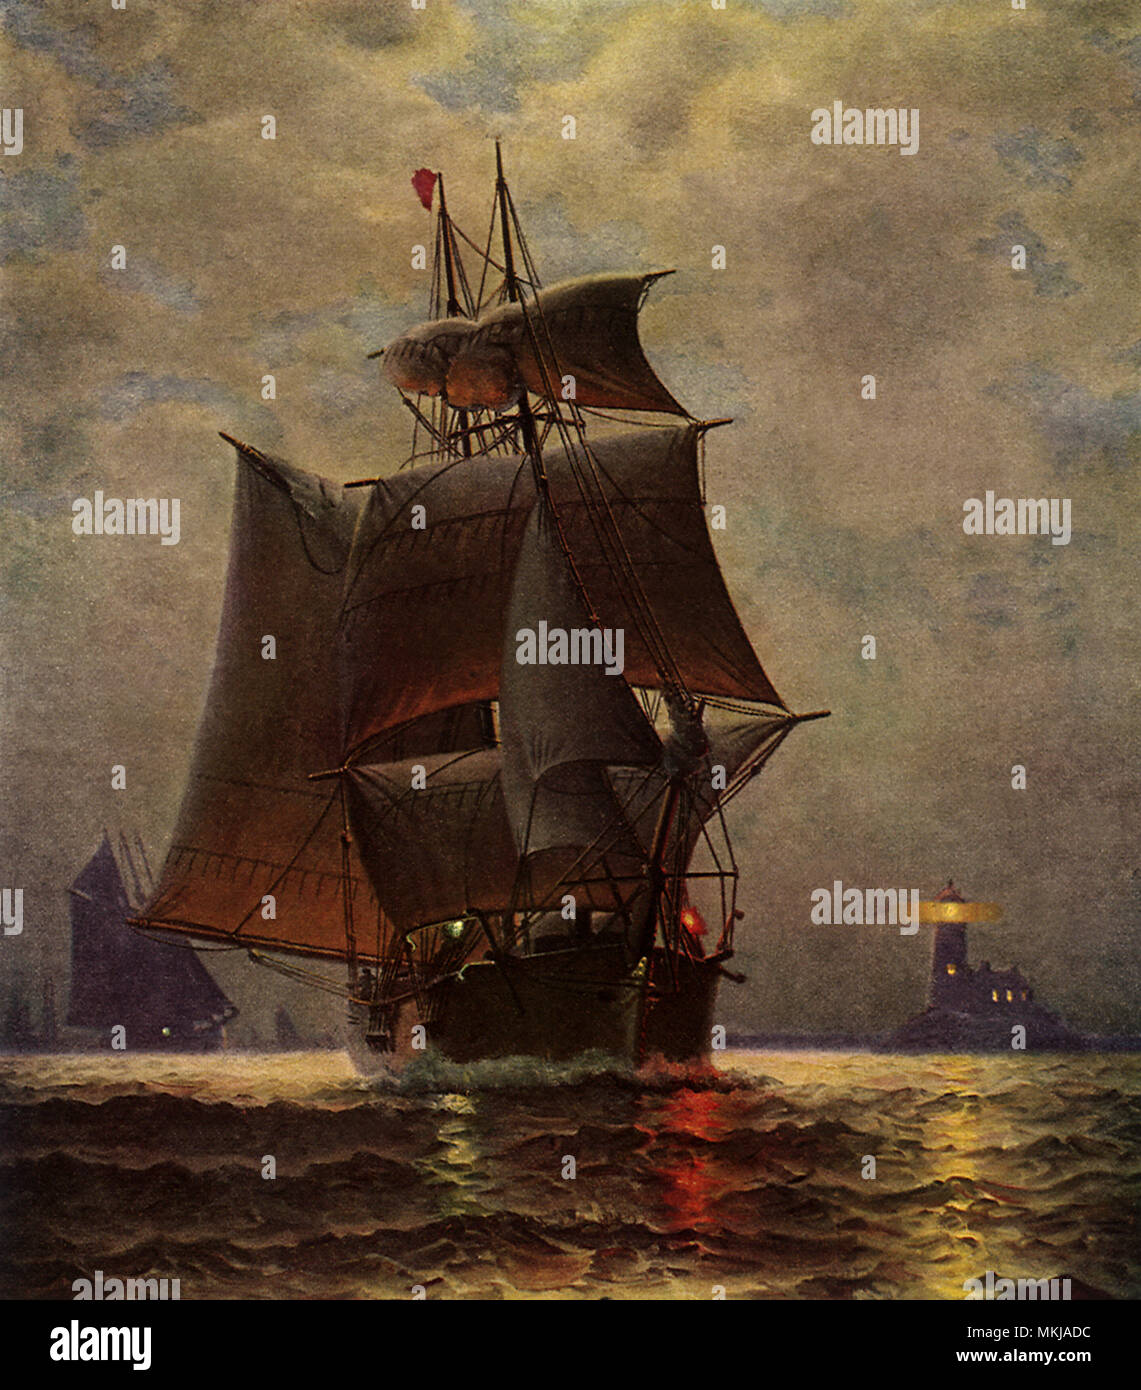 Sailing Ship at Night Stock Photo